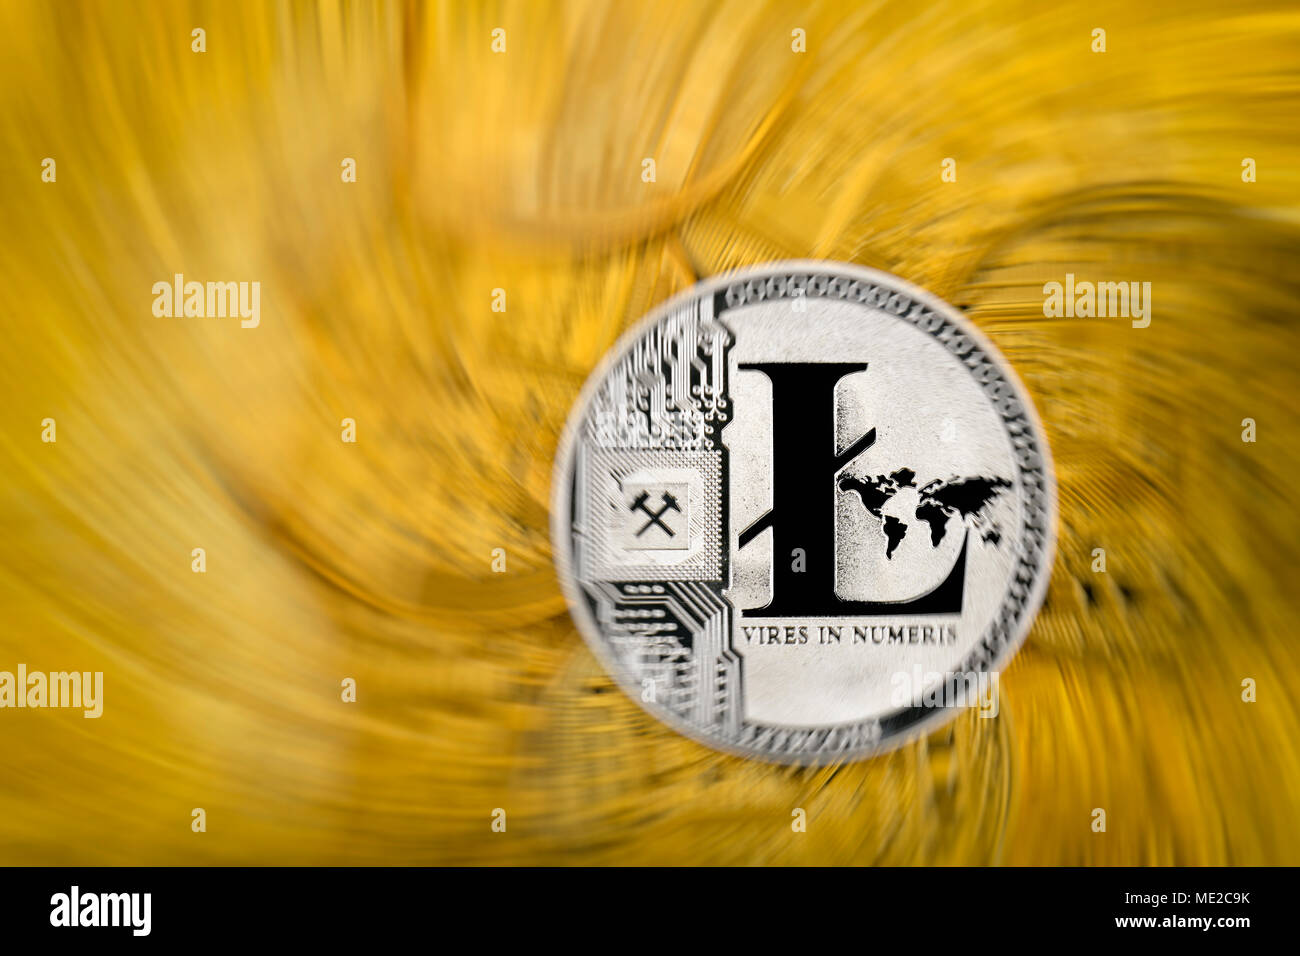 Image symbole de l'action de la turbulence de la monnaie numérique, l'or pièce Litecoin physique Banque D'Images